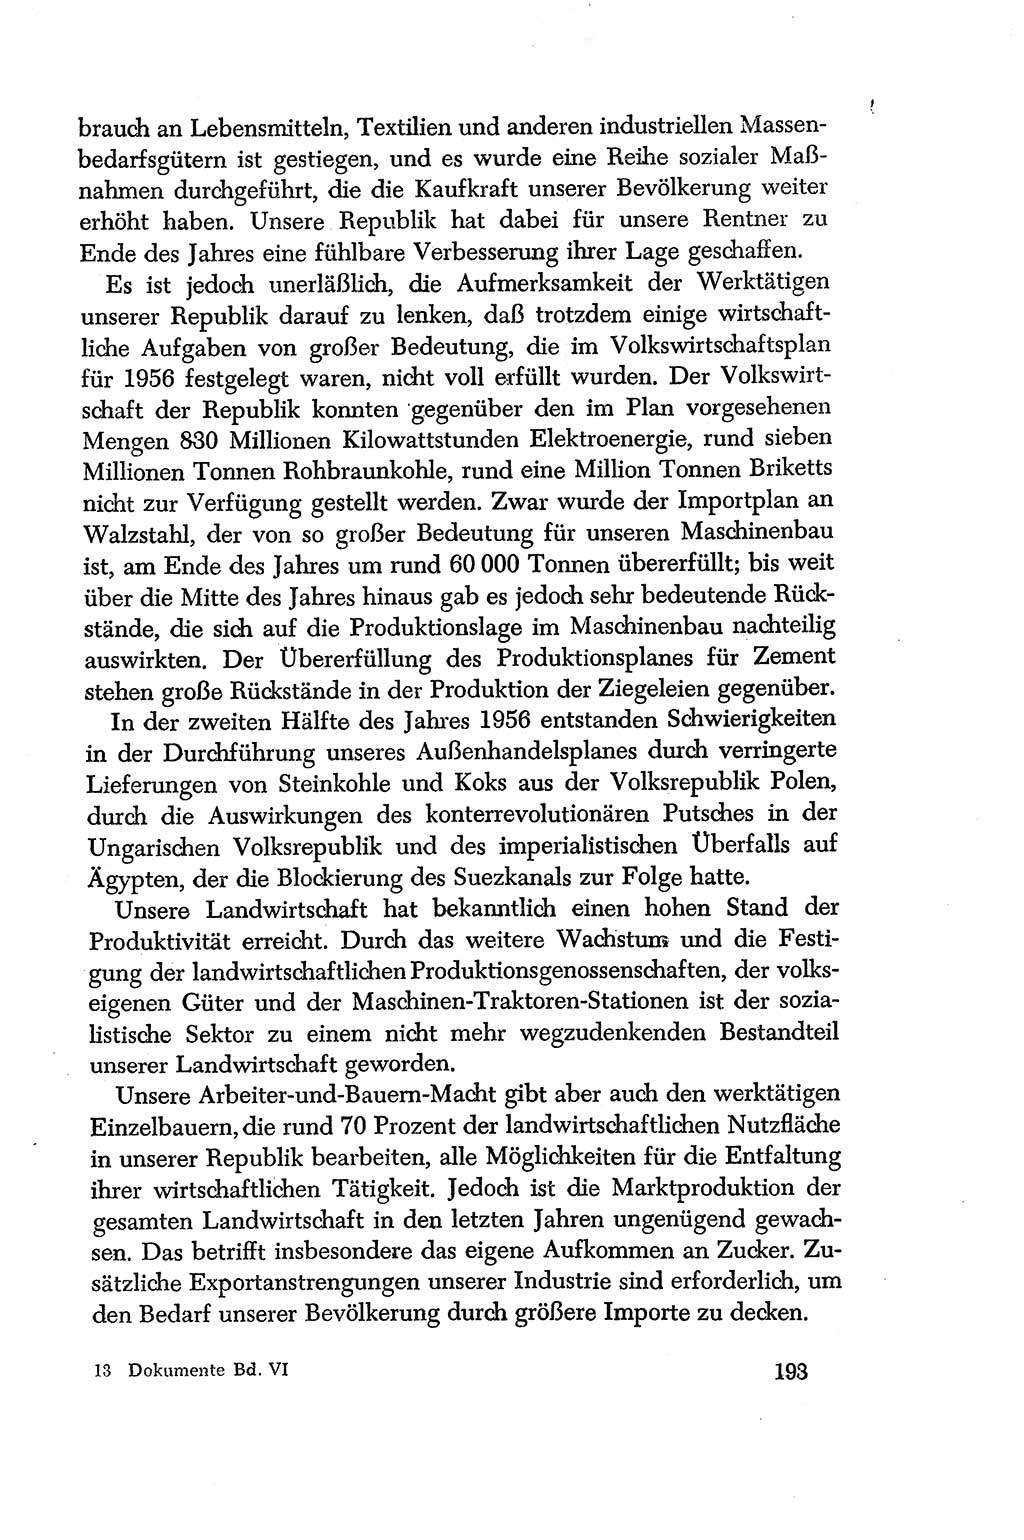 Dokumente der Sozialistischen Einheitspartei Deutschlands (SED) [Deutsche Demokratische Republik (DDR)] 1956-1957, Seite 193 (Dok. SED DDR 1956-1957, S. 193)